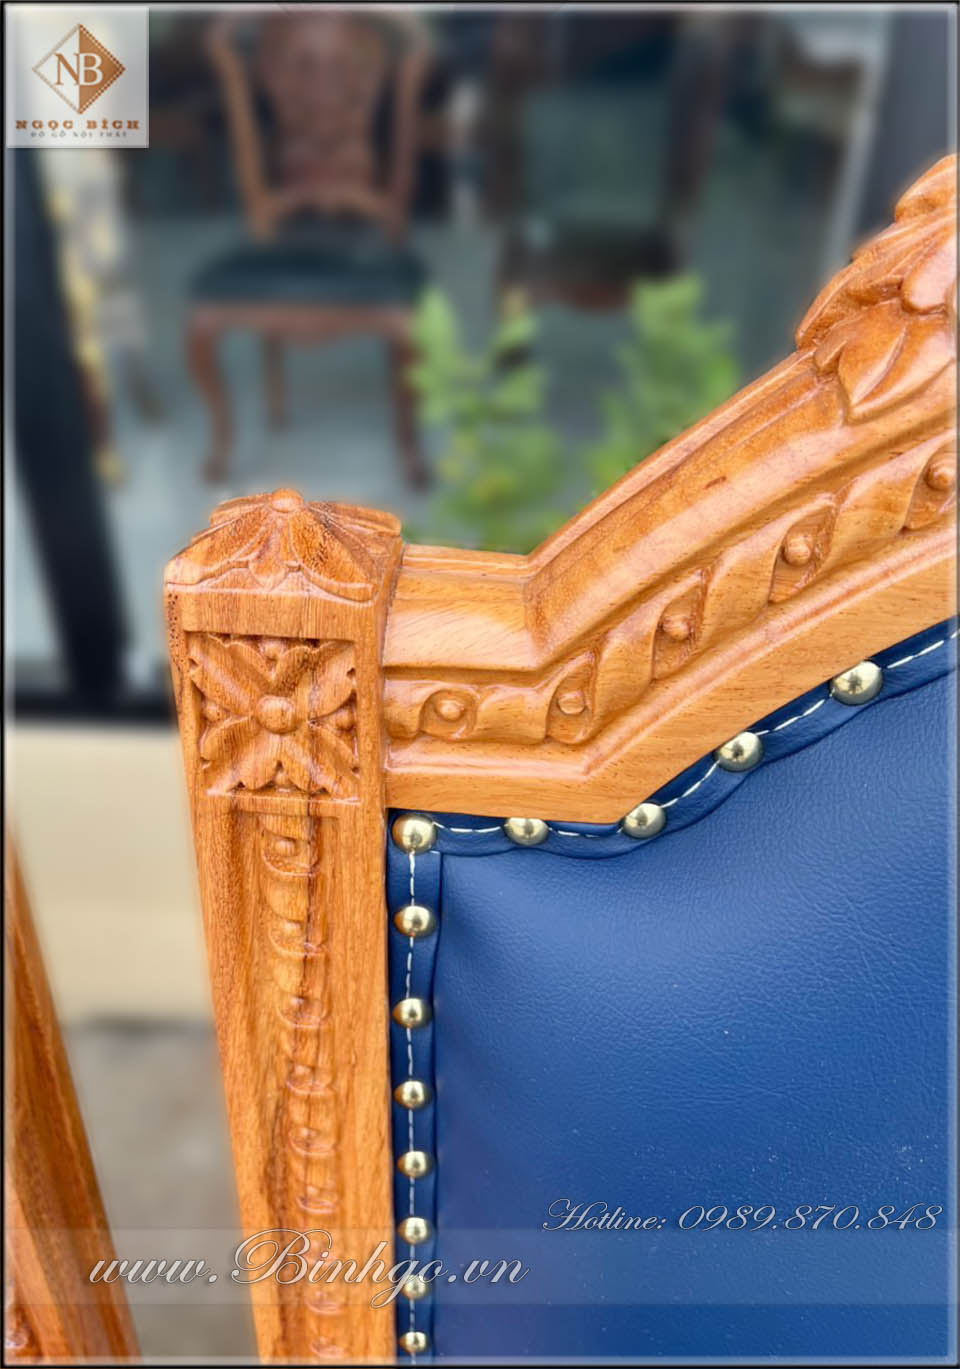 Họa tiết phần đỉnh ghế Putin, được được rất tinh xảo bằng tay, bởi các nghệ nhân của làng nghề nổi tiếng tại Đồng Kỵ, Từ Sơn, Băc Ninh